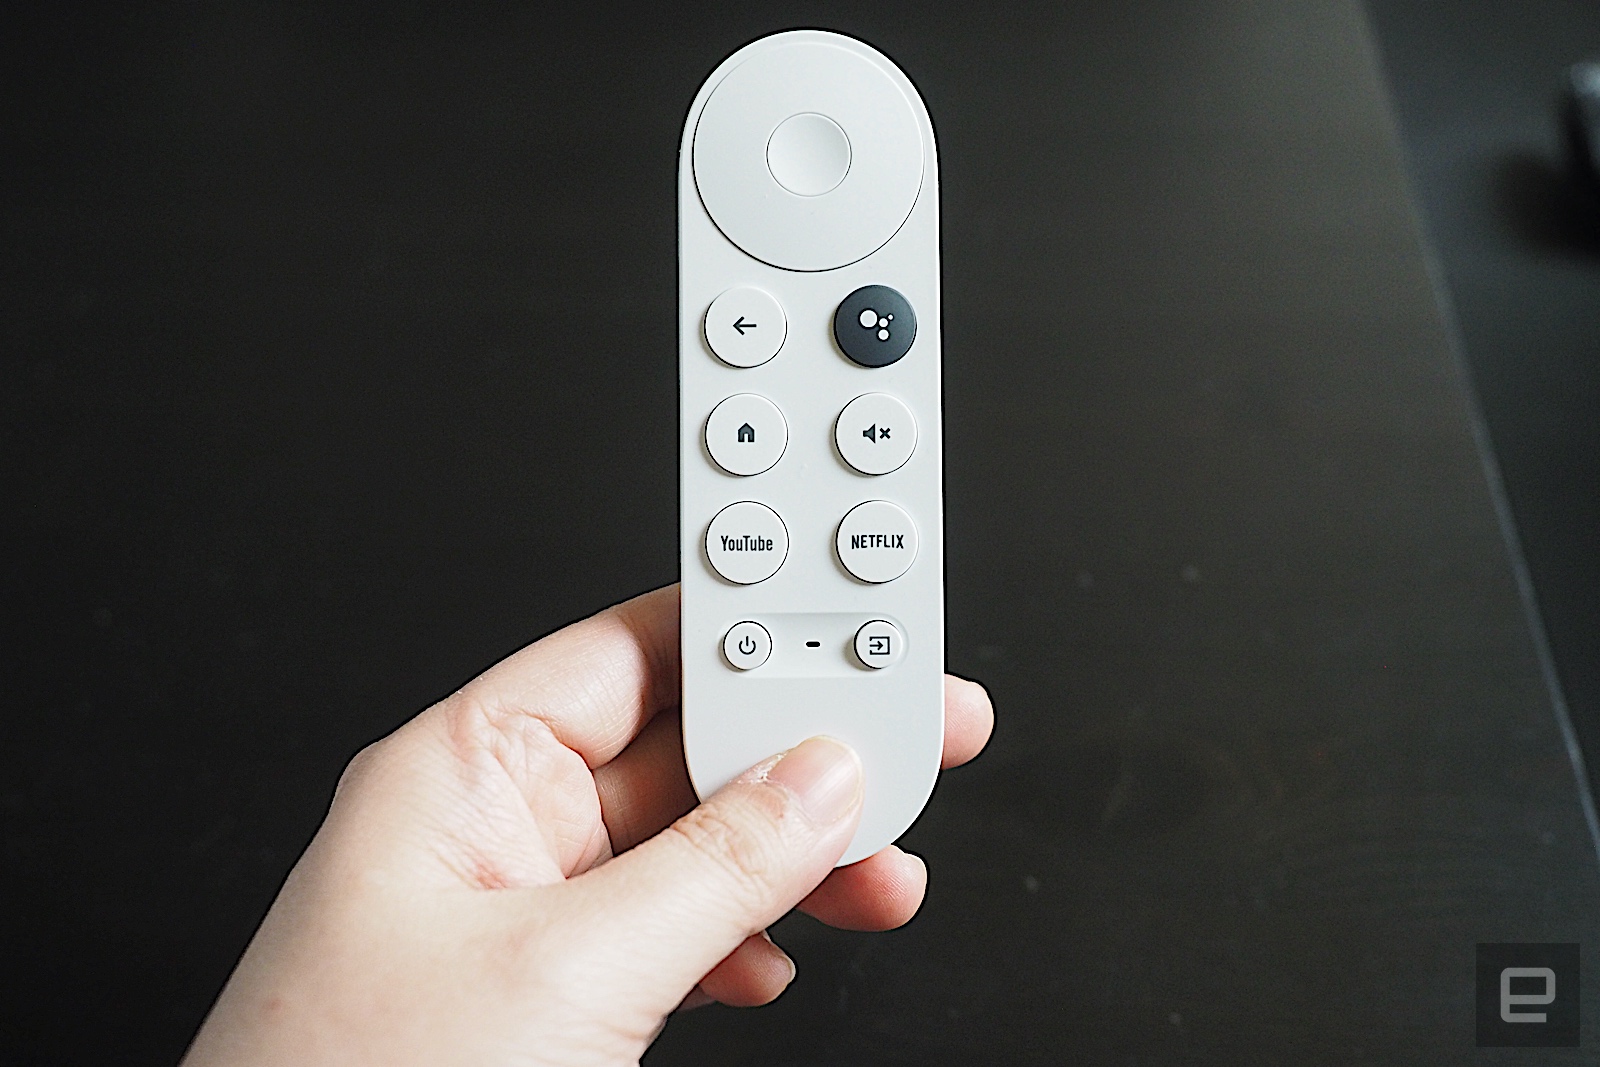 Chromecast с Google TV уже поступил в продажу по цене 40 долларов.